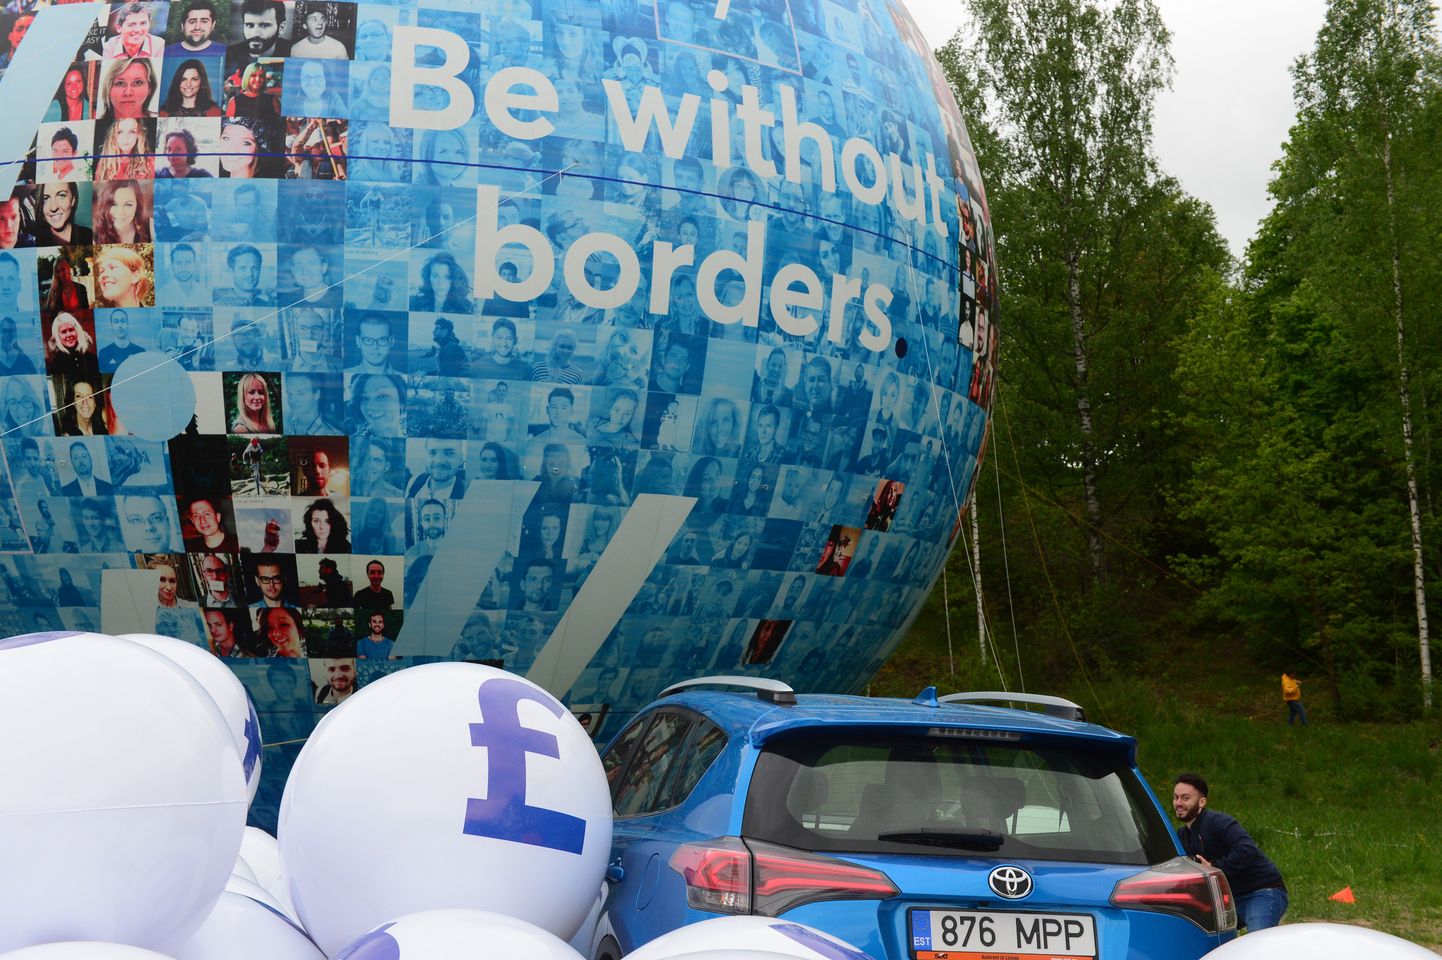 TransferWise Tartus püstitatud maailmarekord, kui püsti pandi läbi aegade suurim täispuhutud õhupall. Maailma avatust ja mitmekesisust sümboliseeriv 21-meetrine kõrgune õhupall kerkis ERMi kõrval asuvasse Tartu lumeparki.